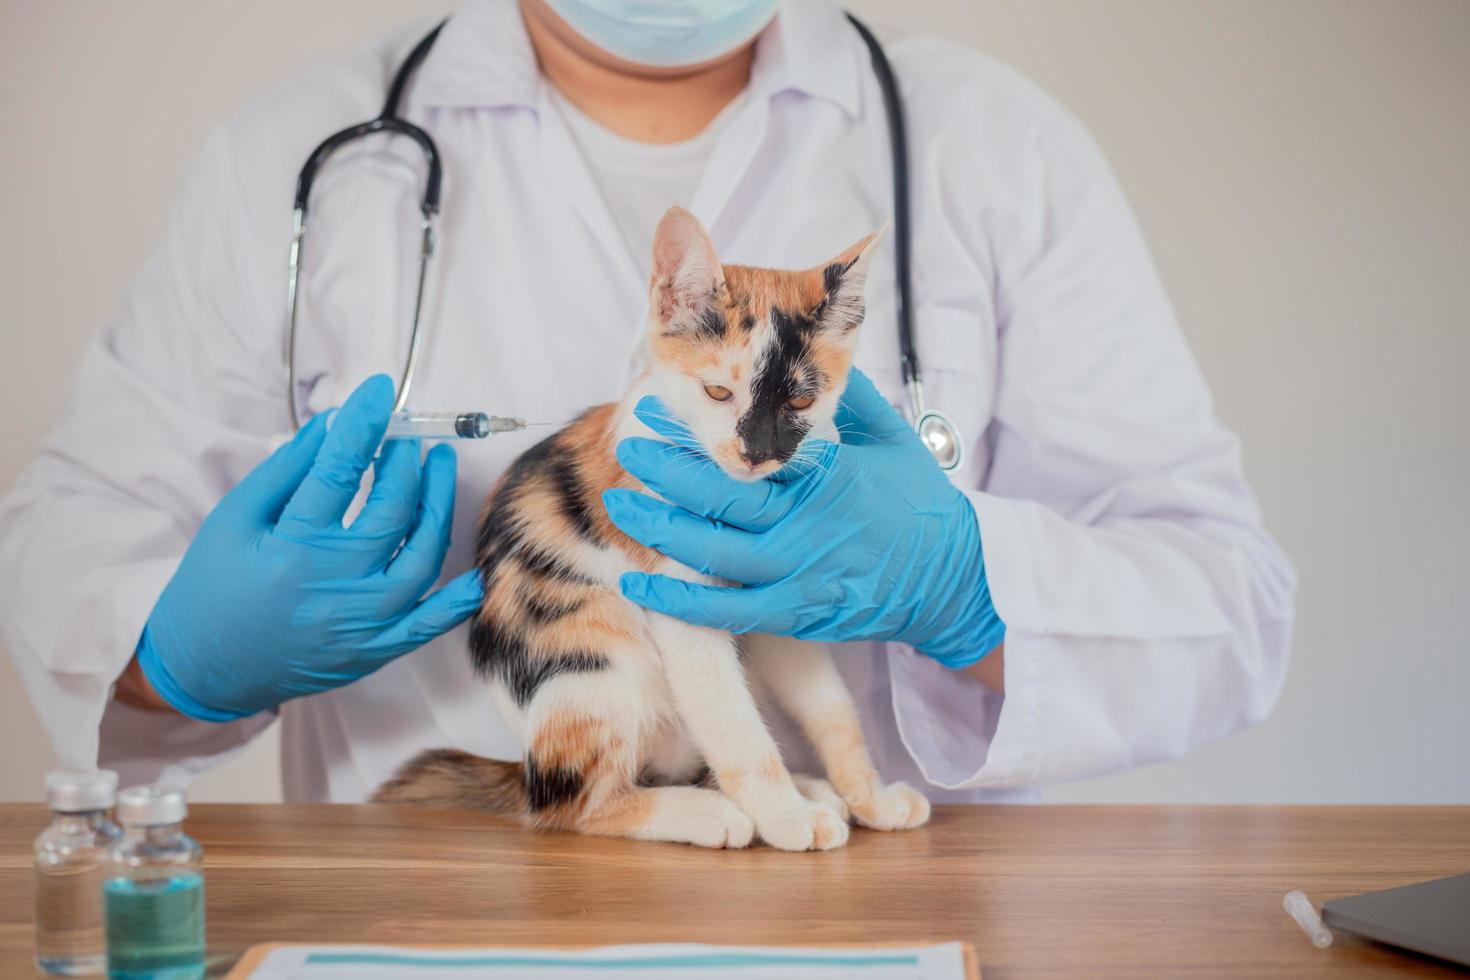 il veterinario sta esaminando il gatto e lo vaccina. foto